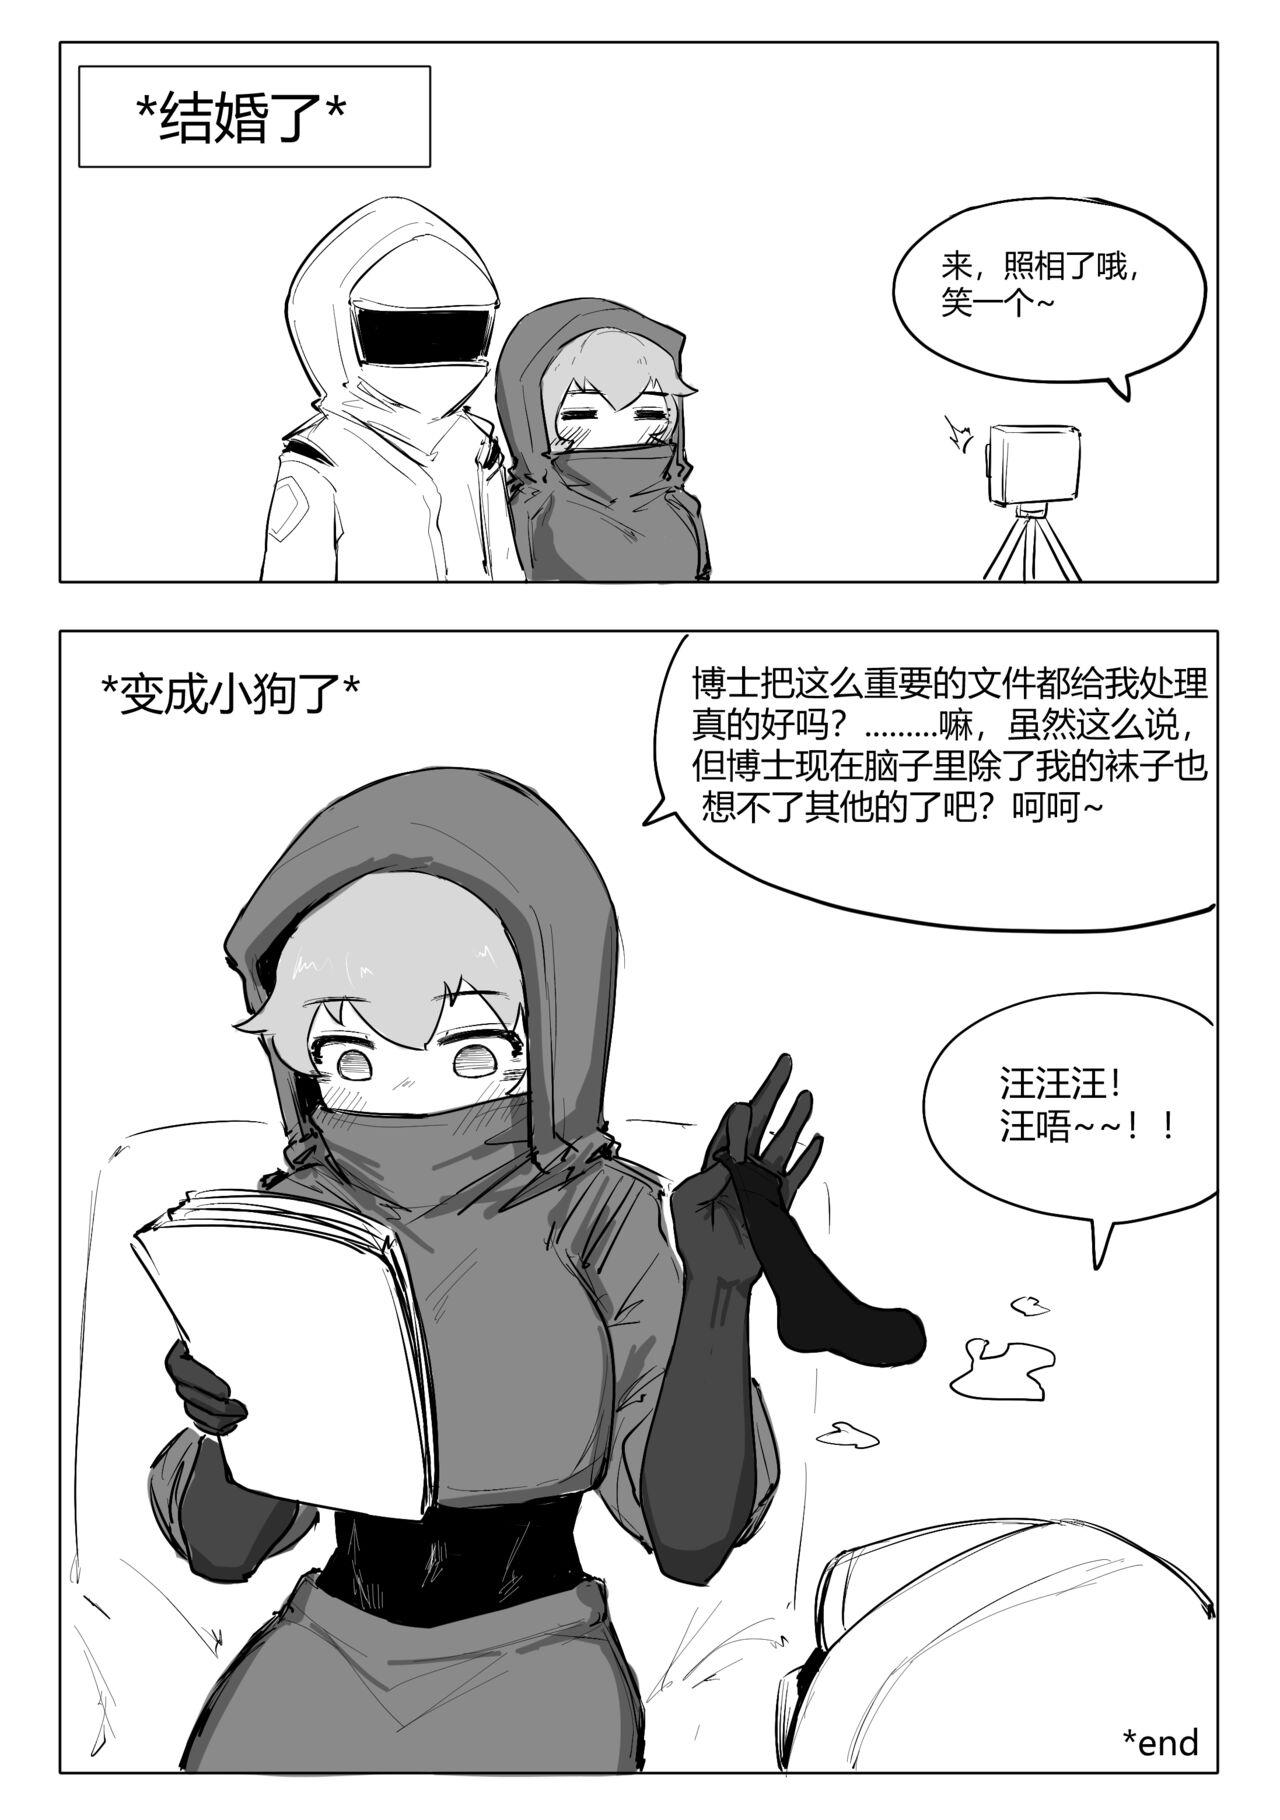 澄澈之冰 明日方舟漫画 整合运动小兵 8